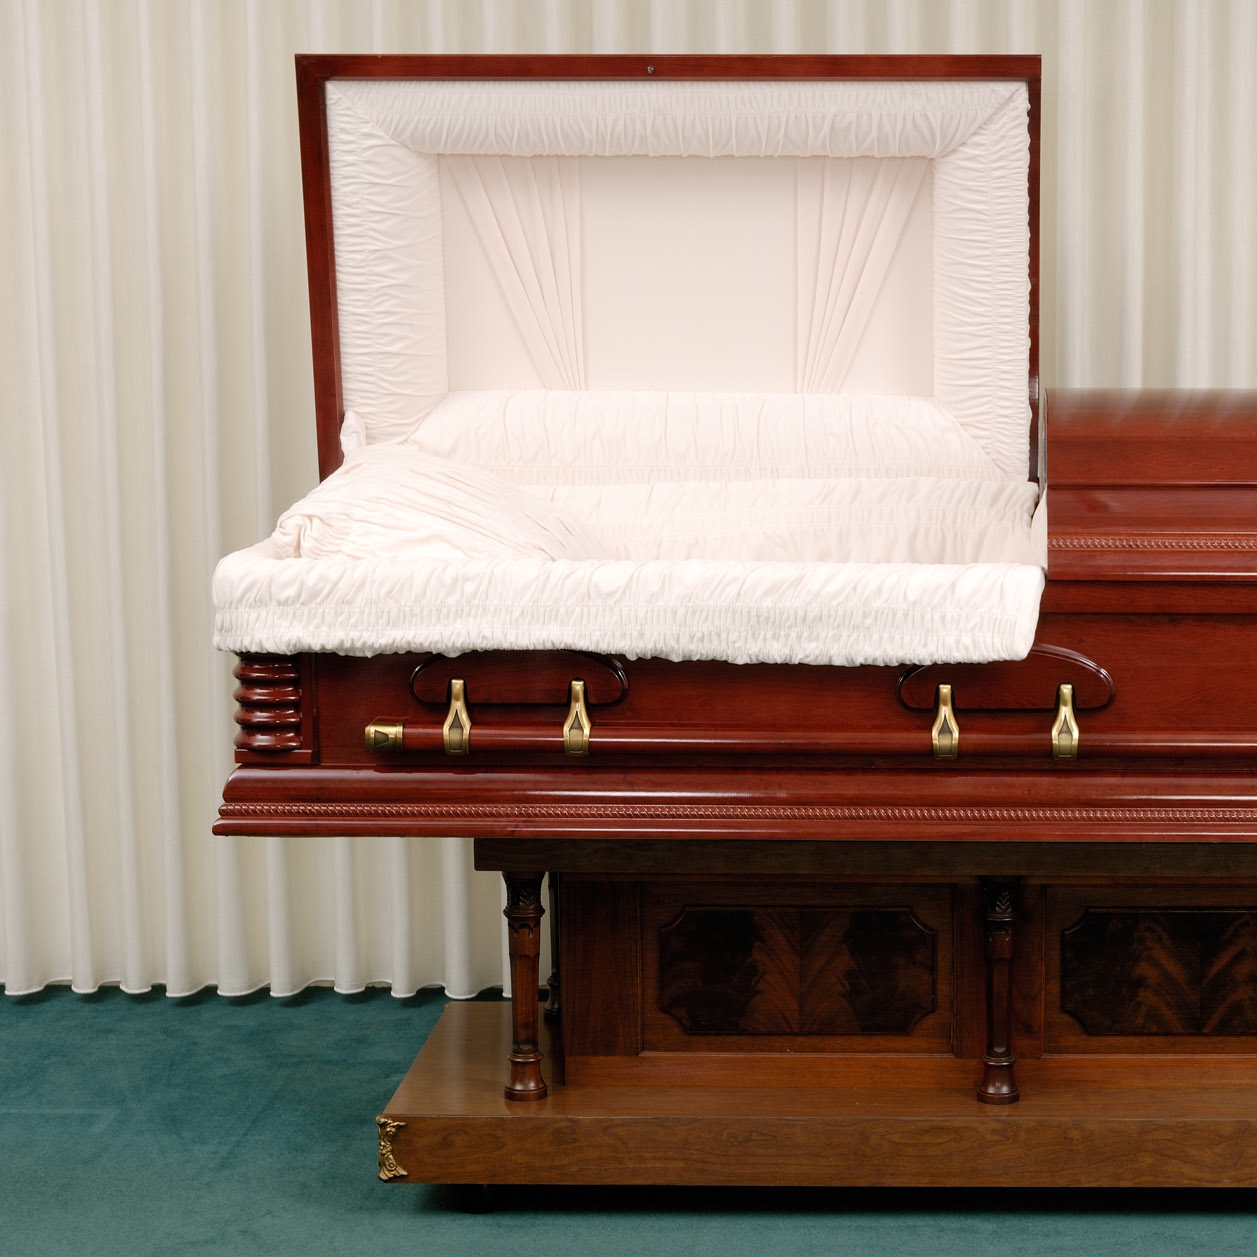 Funeral Parlor. Видеть пустой гроб